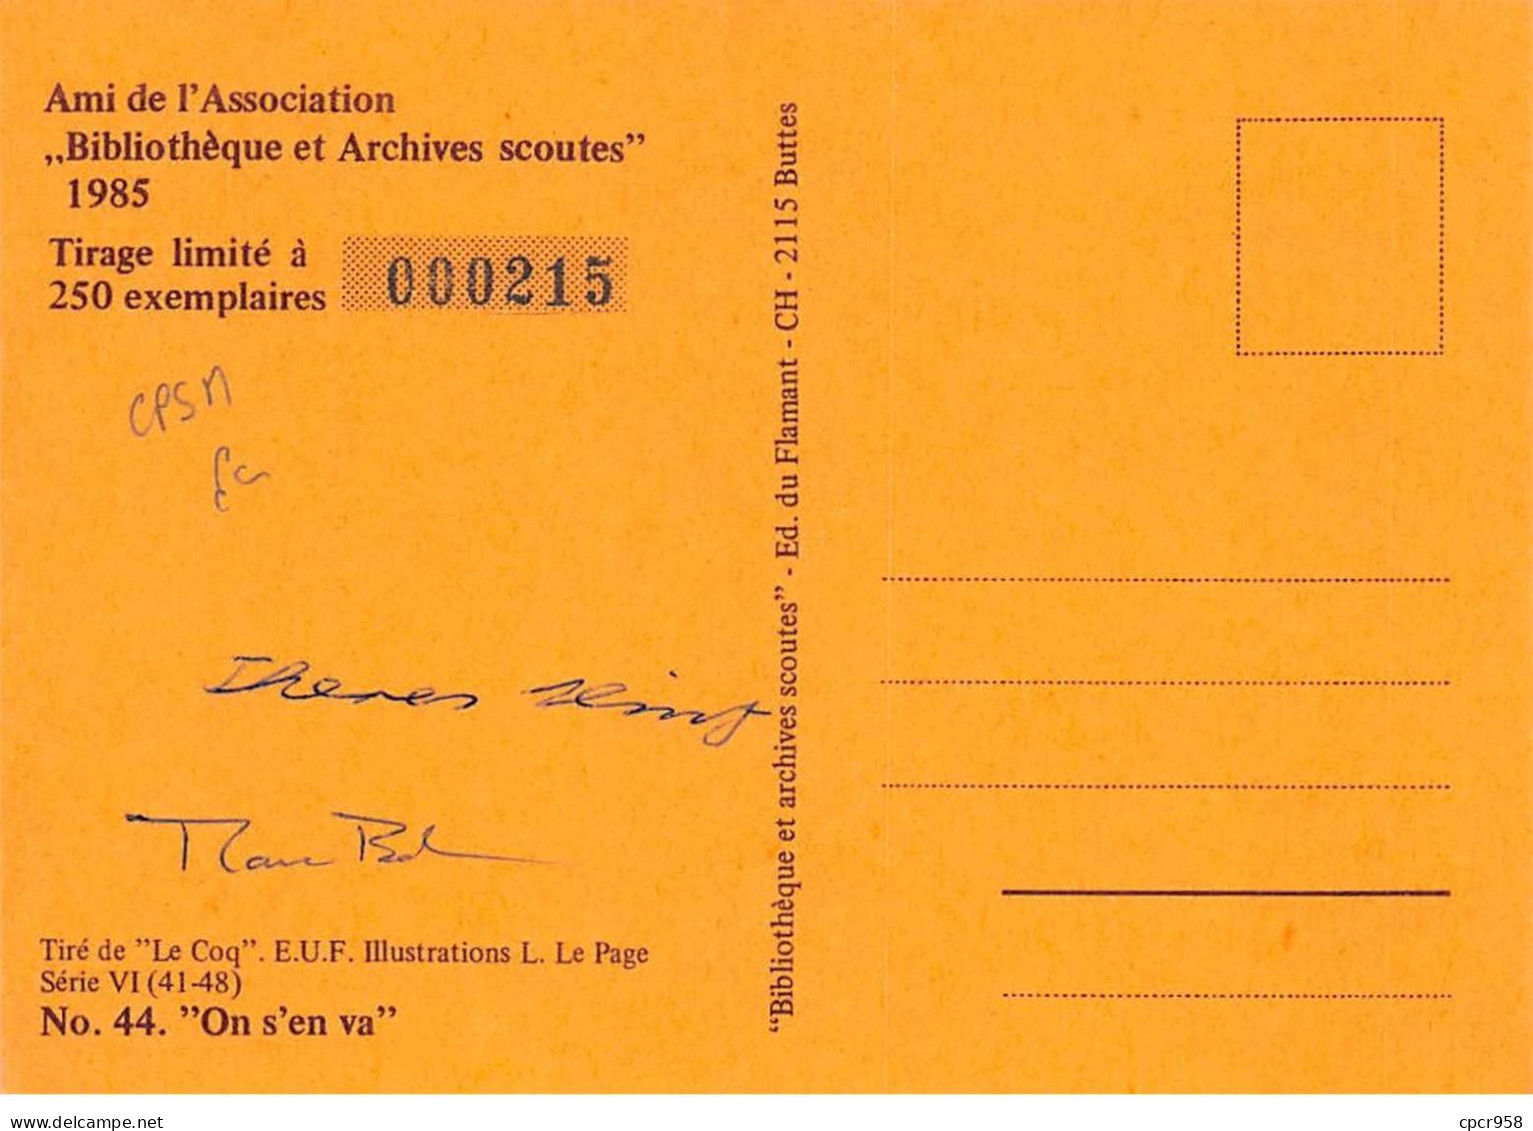 SCOUTISME - SAN36109 - Ami De L'Association Bibliothèque Et Archives Scoutes 1985 - N°44 "On S'en Va" - CPSM 15x10 Cm - Pfadfinder-Bewegung